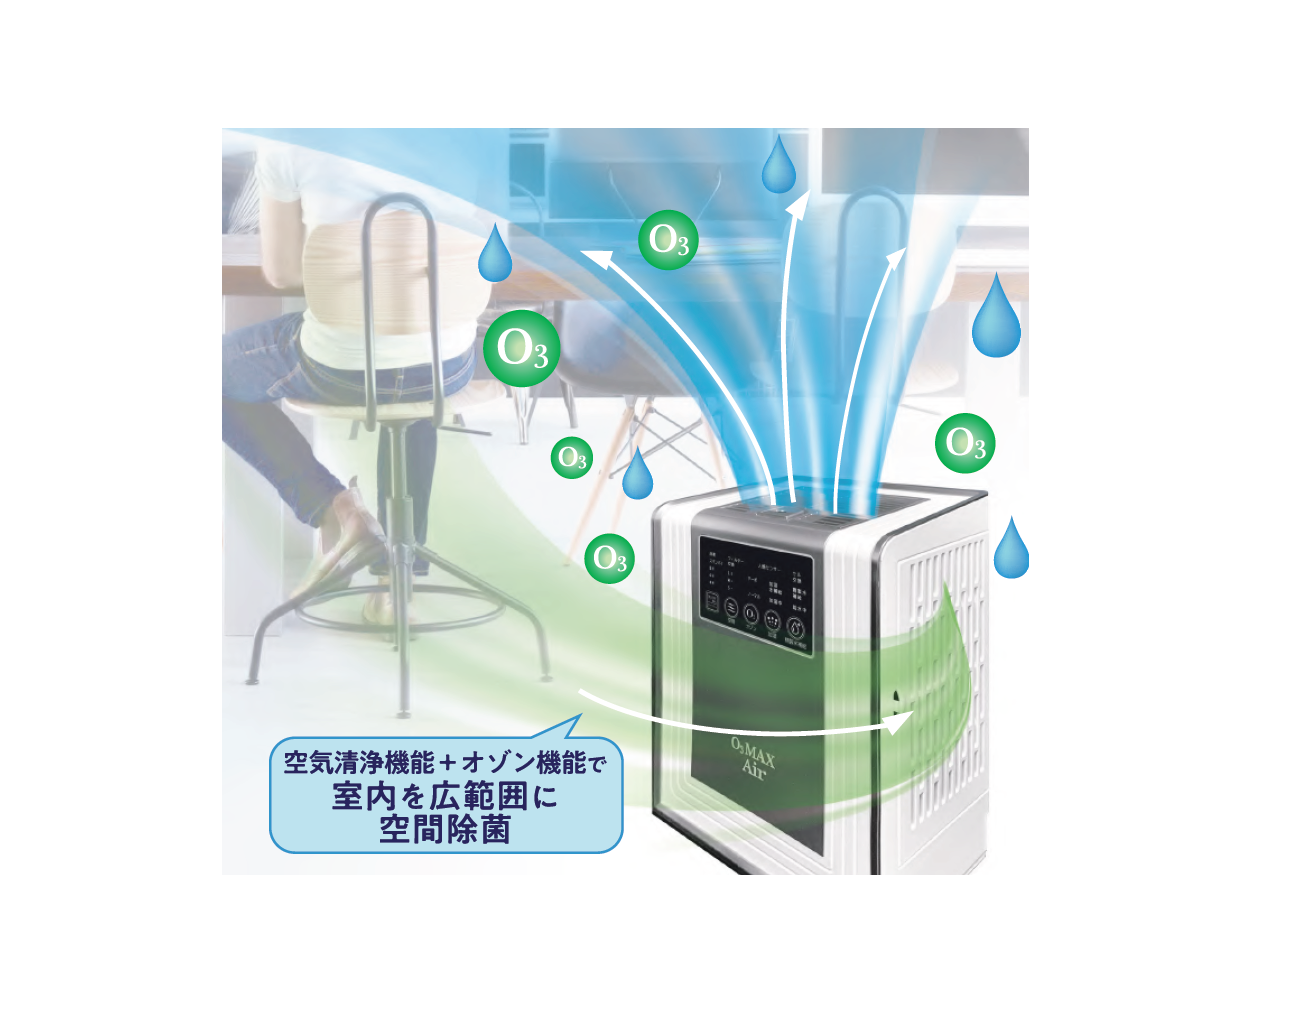 オゾンを用いた除菌加湿器 O3MAX Air ( OY-FF90-A )。 | PERS JAPAN